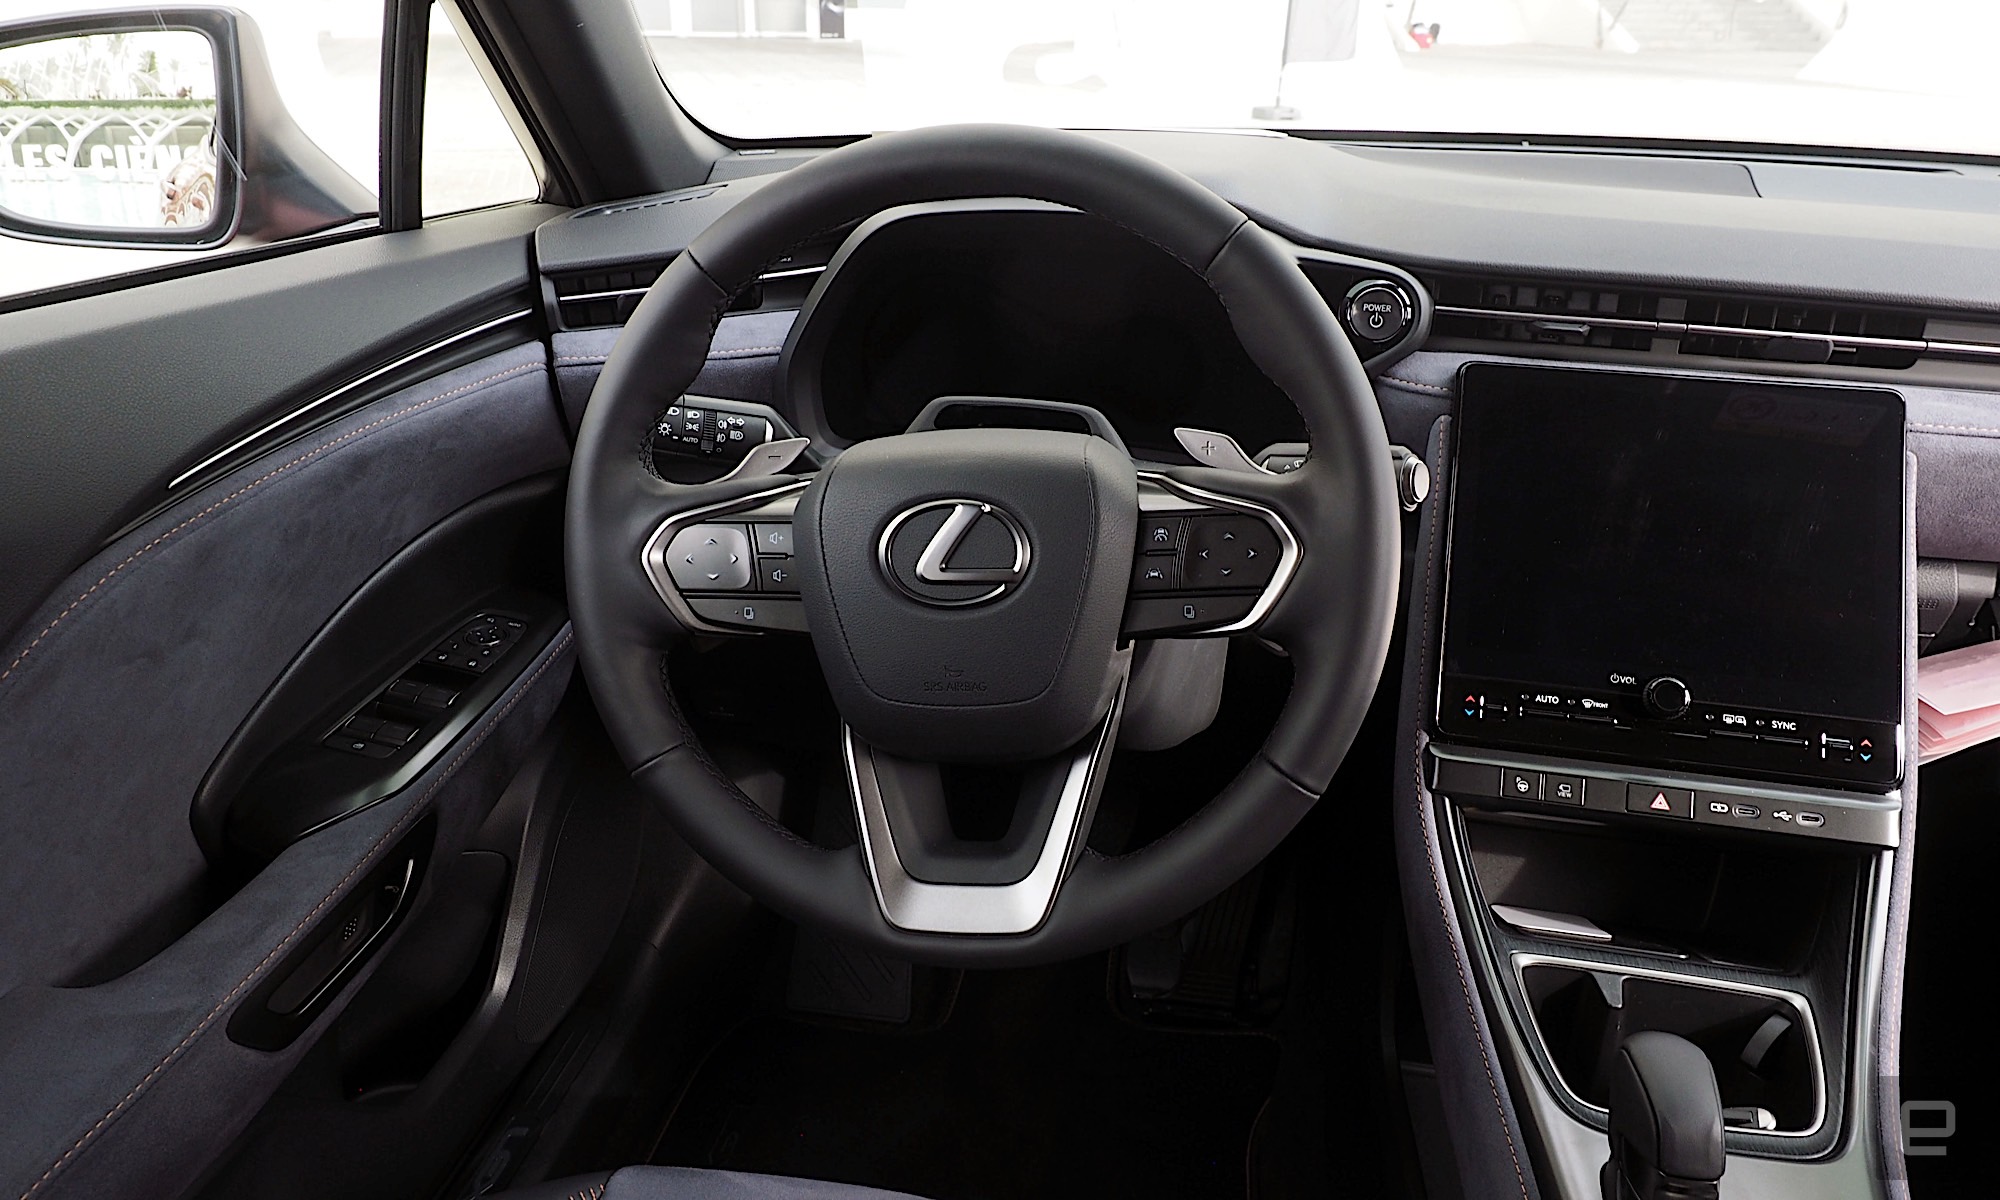 تصویری از موقعیت راننده در داخل یک لکسوس LBX با فضای داخلی خاکستری و مشکی تیره، چرخ در جلوی یک جعبه ابزار دیجیتال ایستاده در حالی که یک سیستم اطلاعات سرگرمی در سمت راست آن قرار دارد.